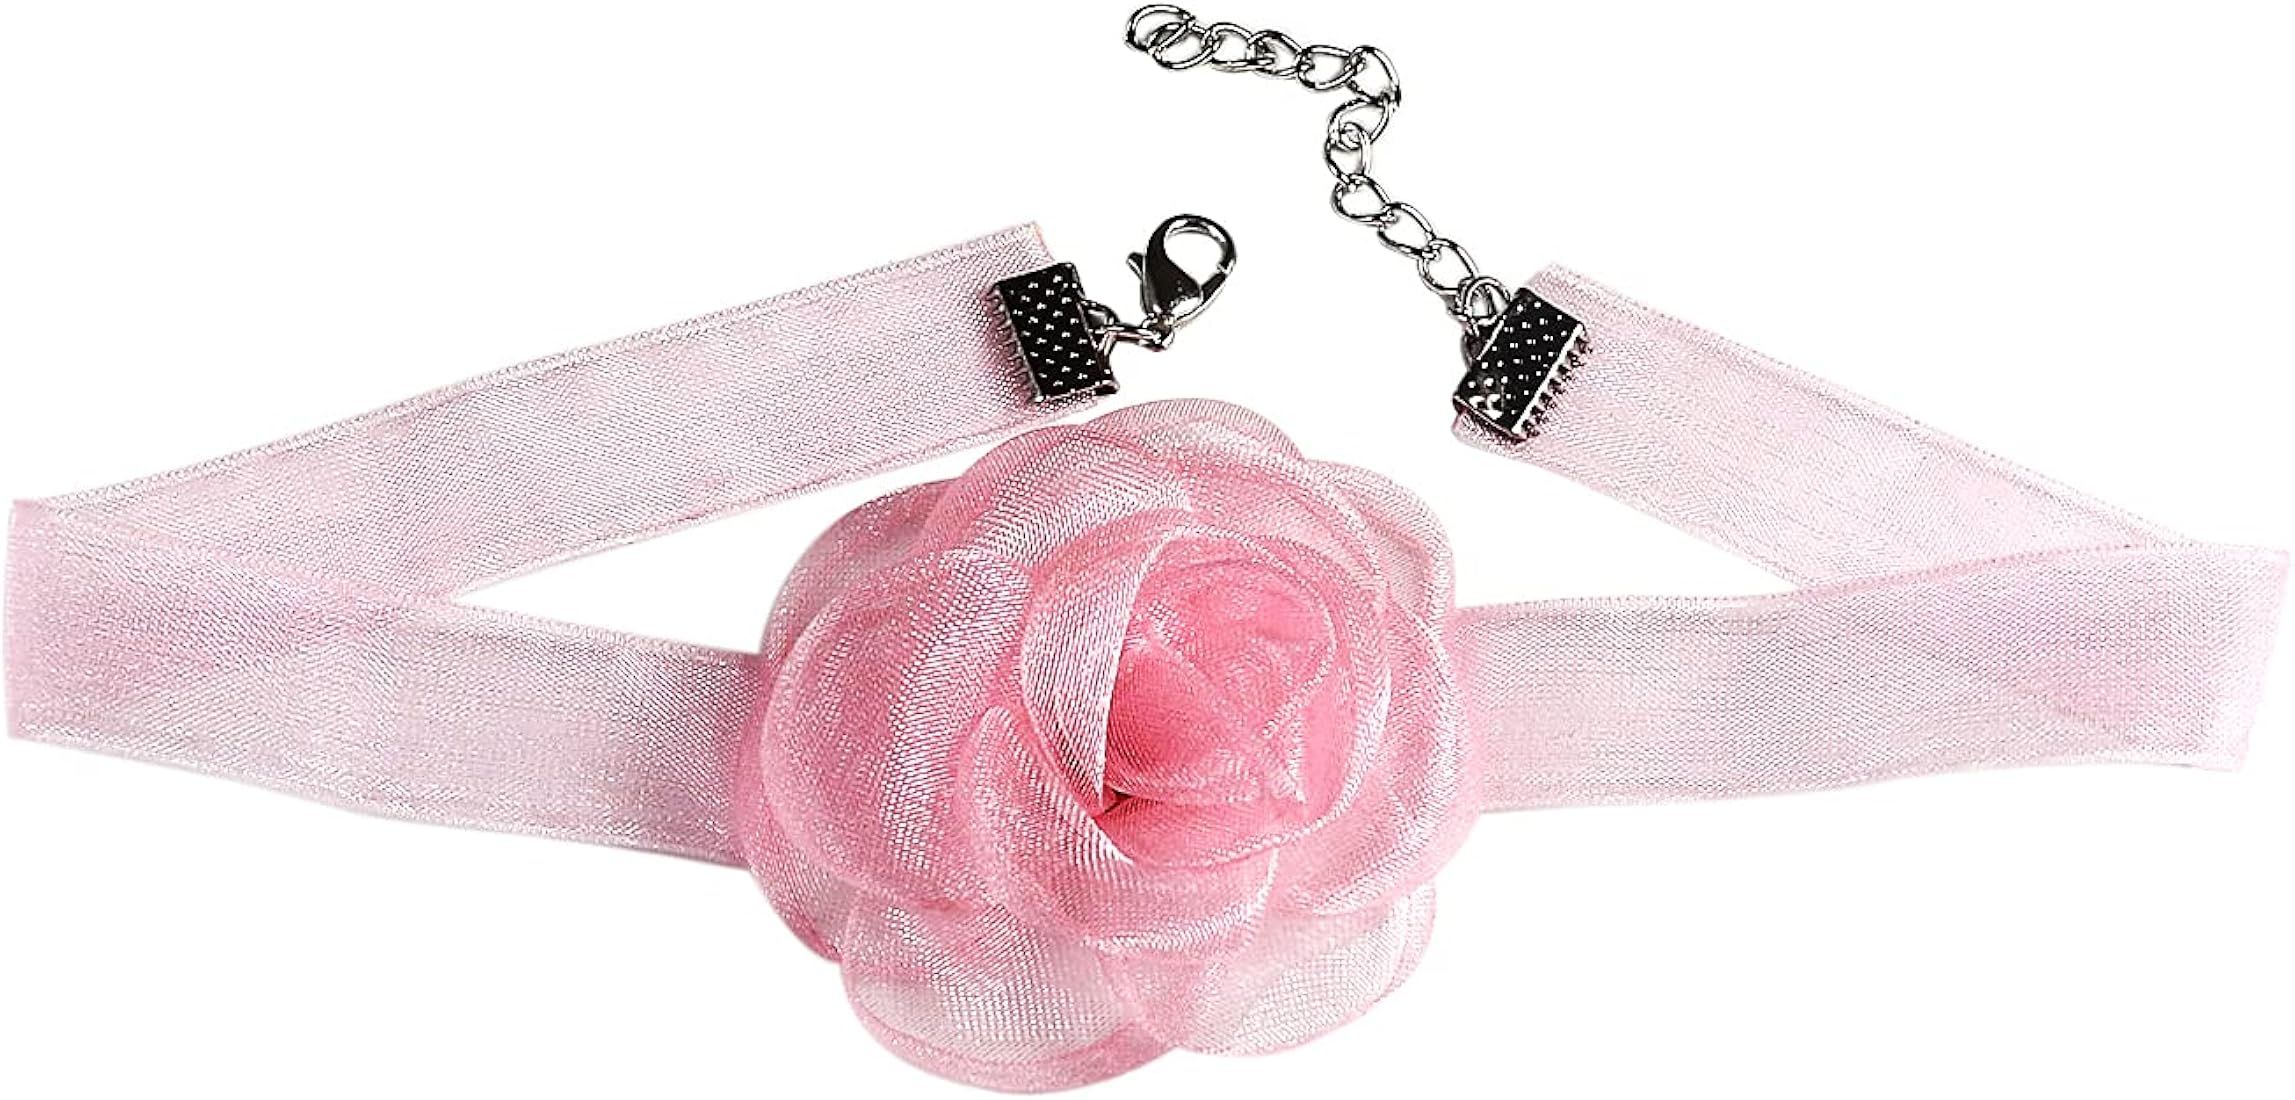 Pingyongchang Bohemian Lace Flower Collar Choker Necklace Soft White Flower Tie Cravat Necklace W... | Amazon (US)